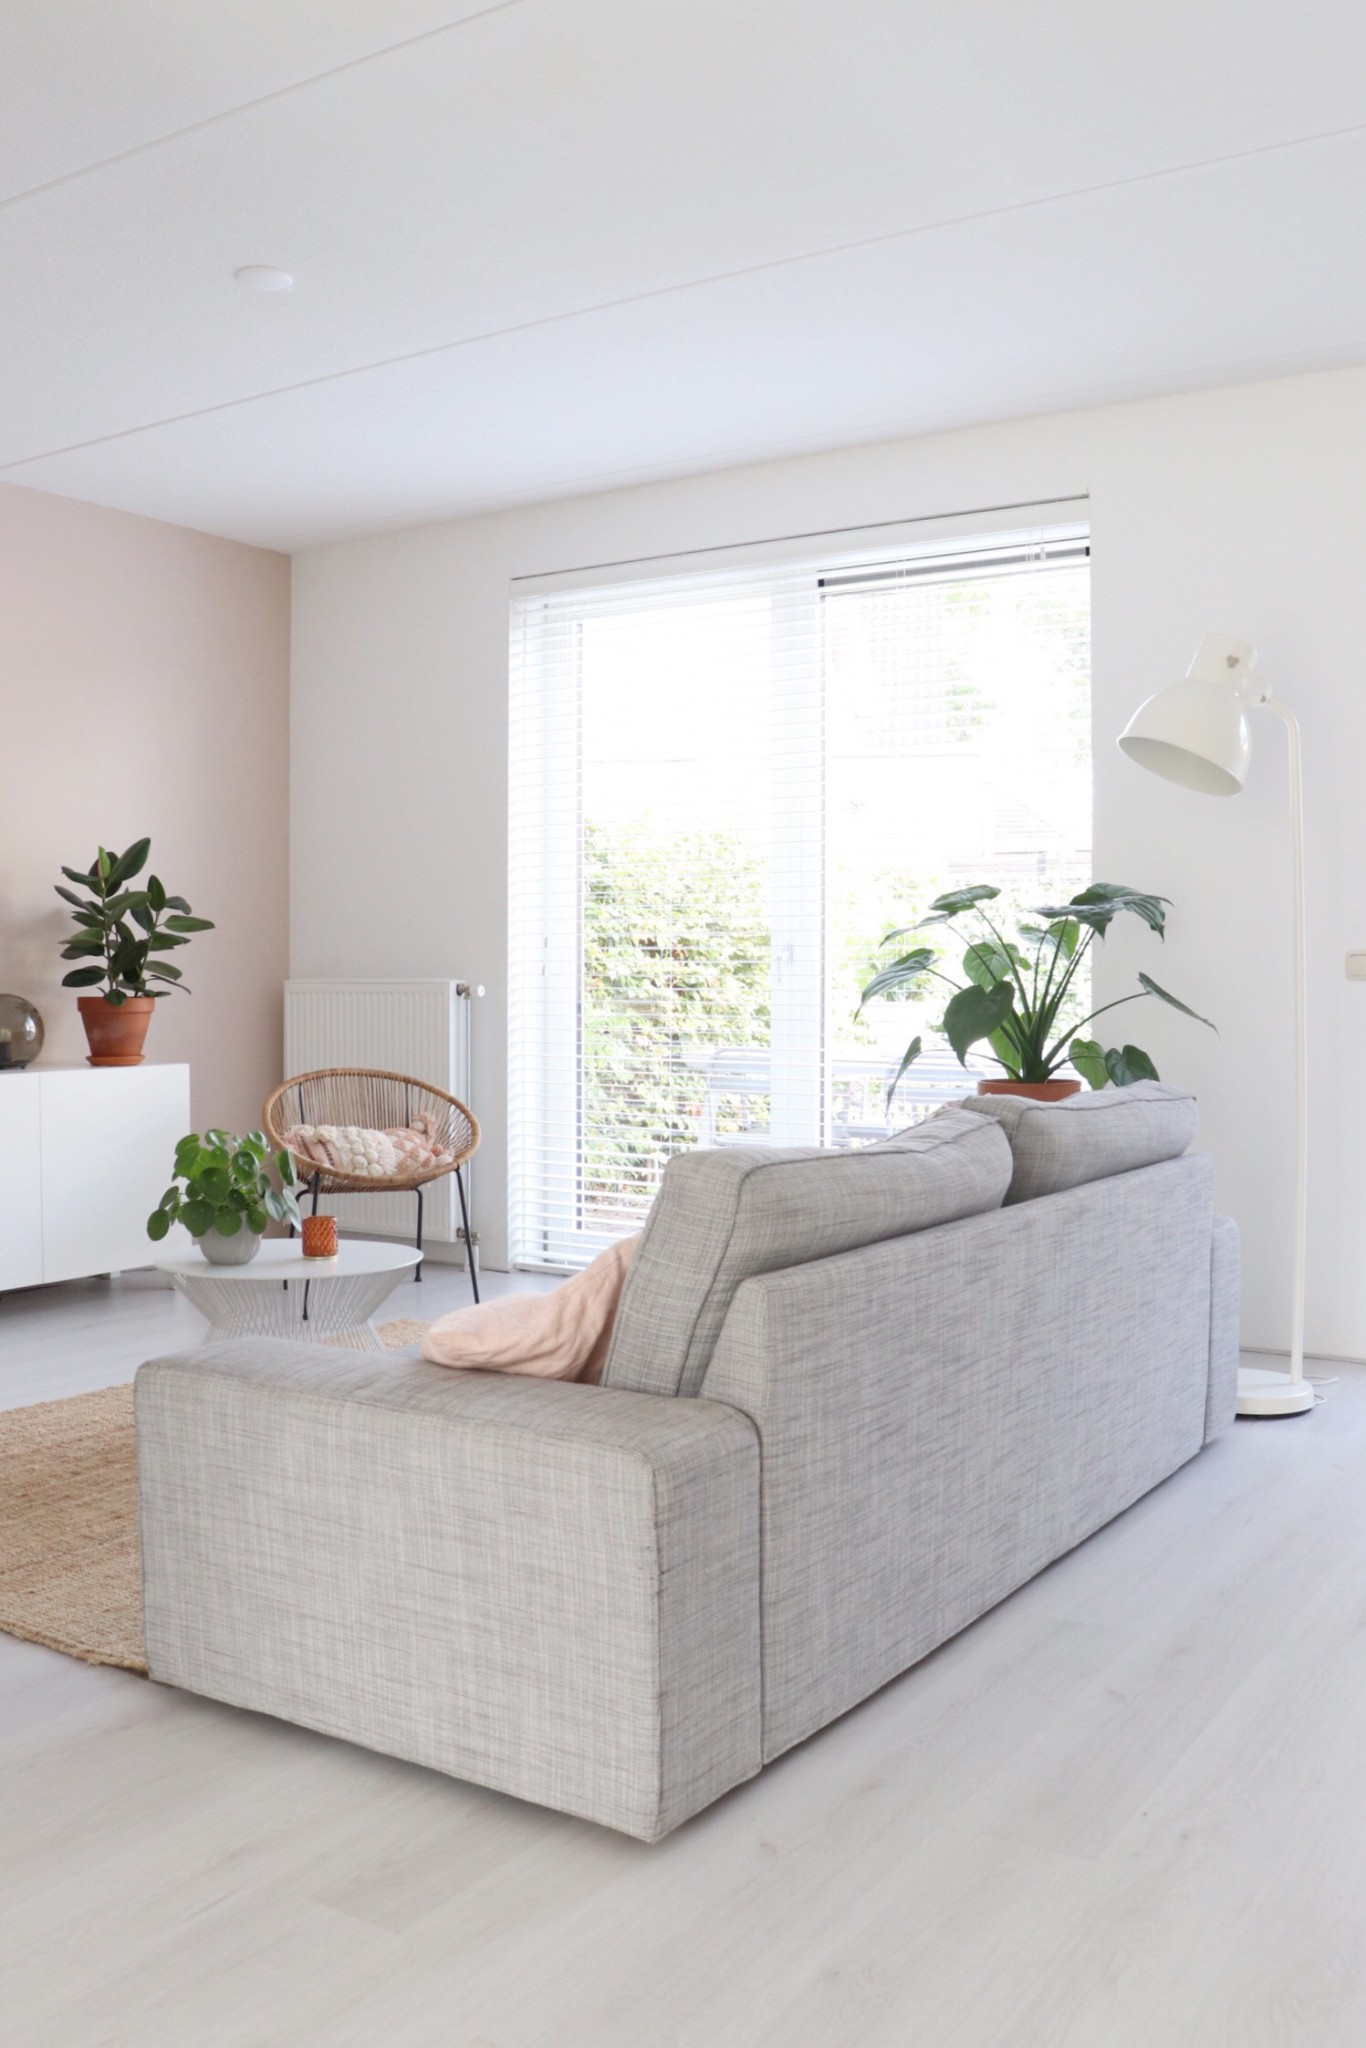 de zithoek in de woonkamer met een grijze bank, rotan stoel en planten. 